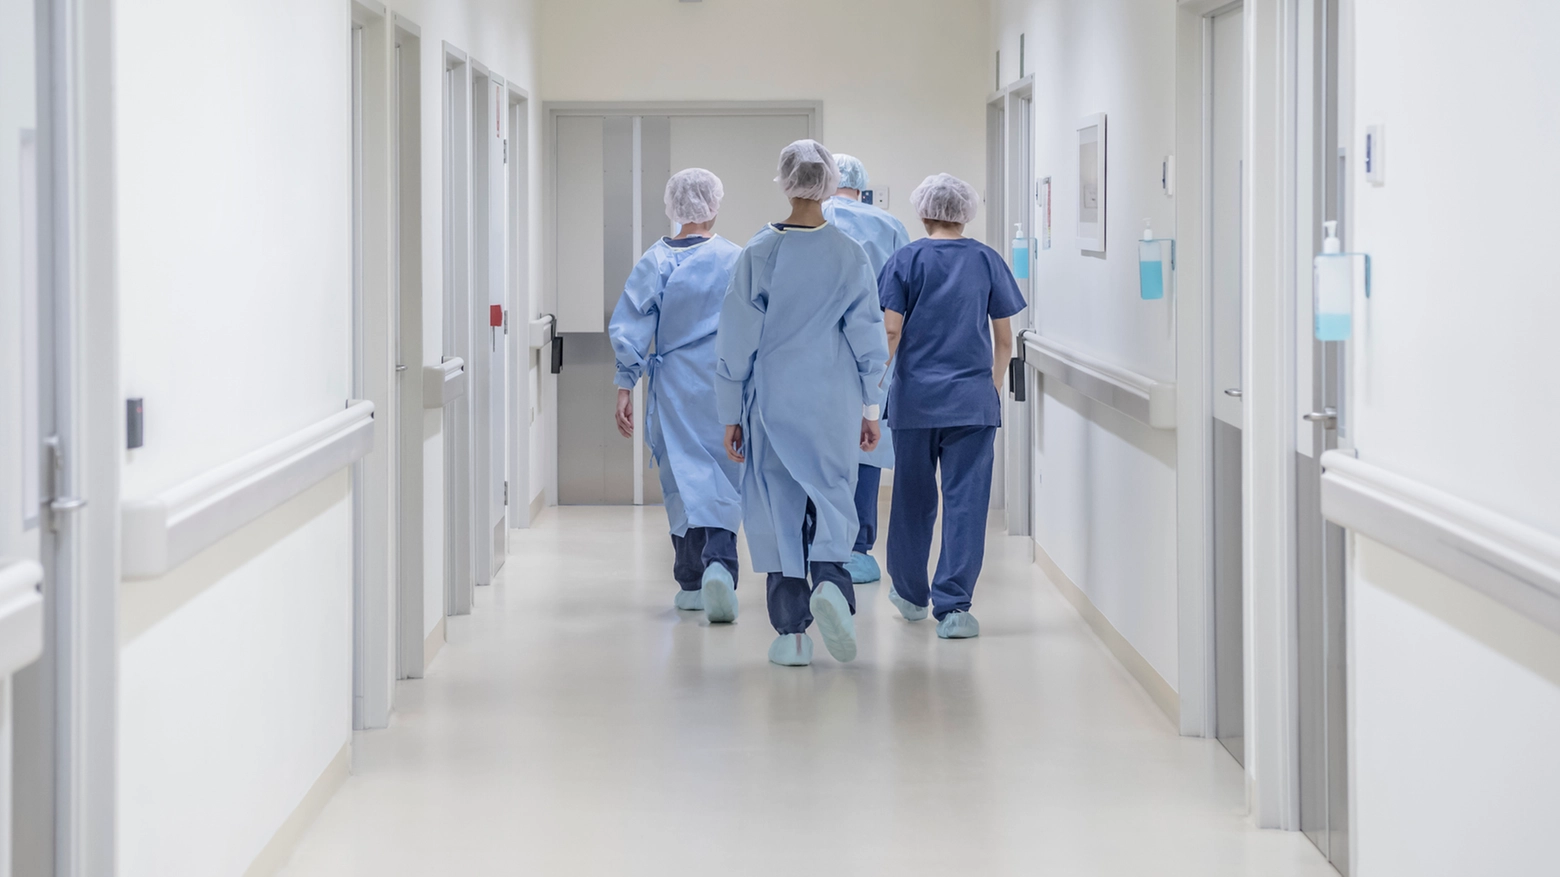 "Gli infermieri non ce la fanno più", denuncia Nursid